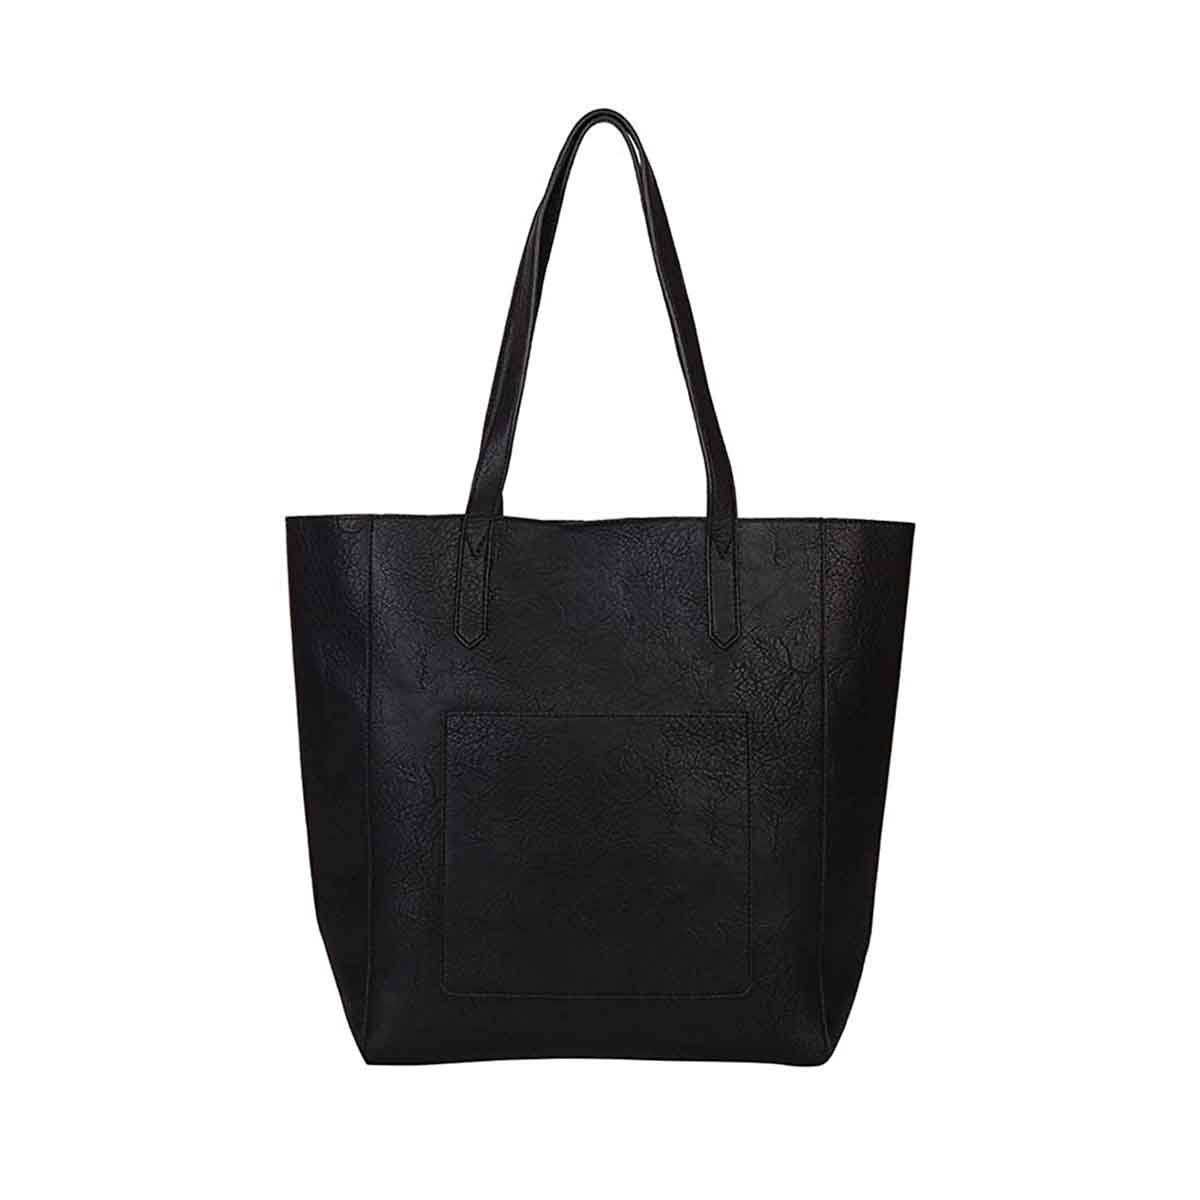 Mona B Black Handbag for Women | Zipper Tote Bag for Grocery, Shopping, Travel | Shoulder Bags for Women: Set of 3 (Black)